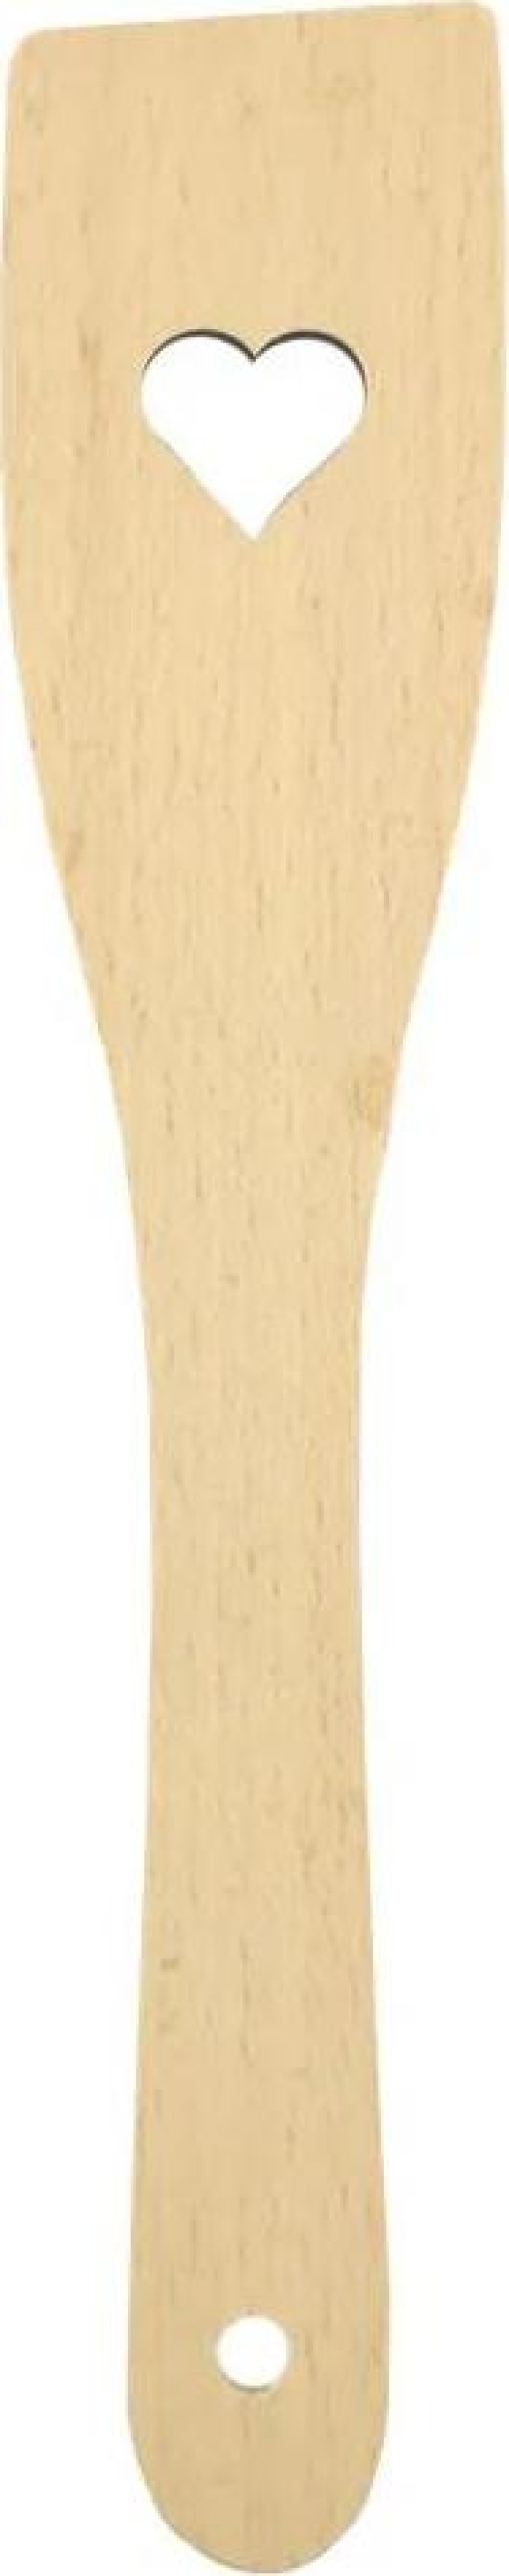 AMADEA Dřevěná obracečka se srdcem, masivní dřevo, 28 cm